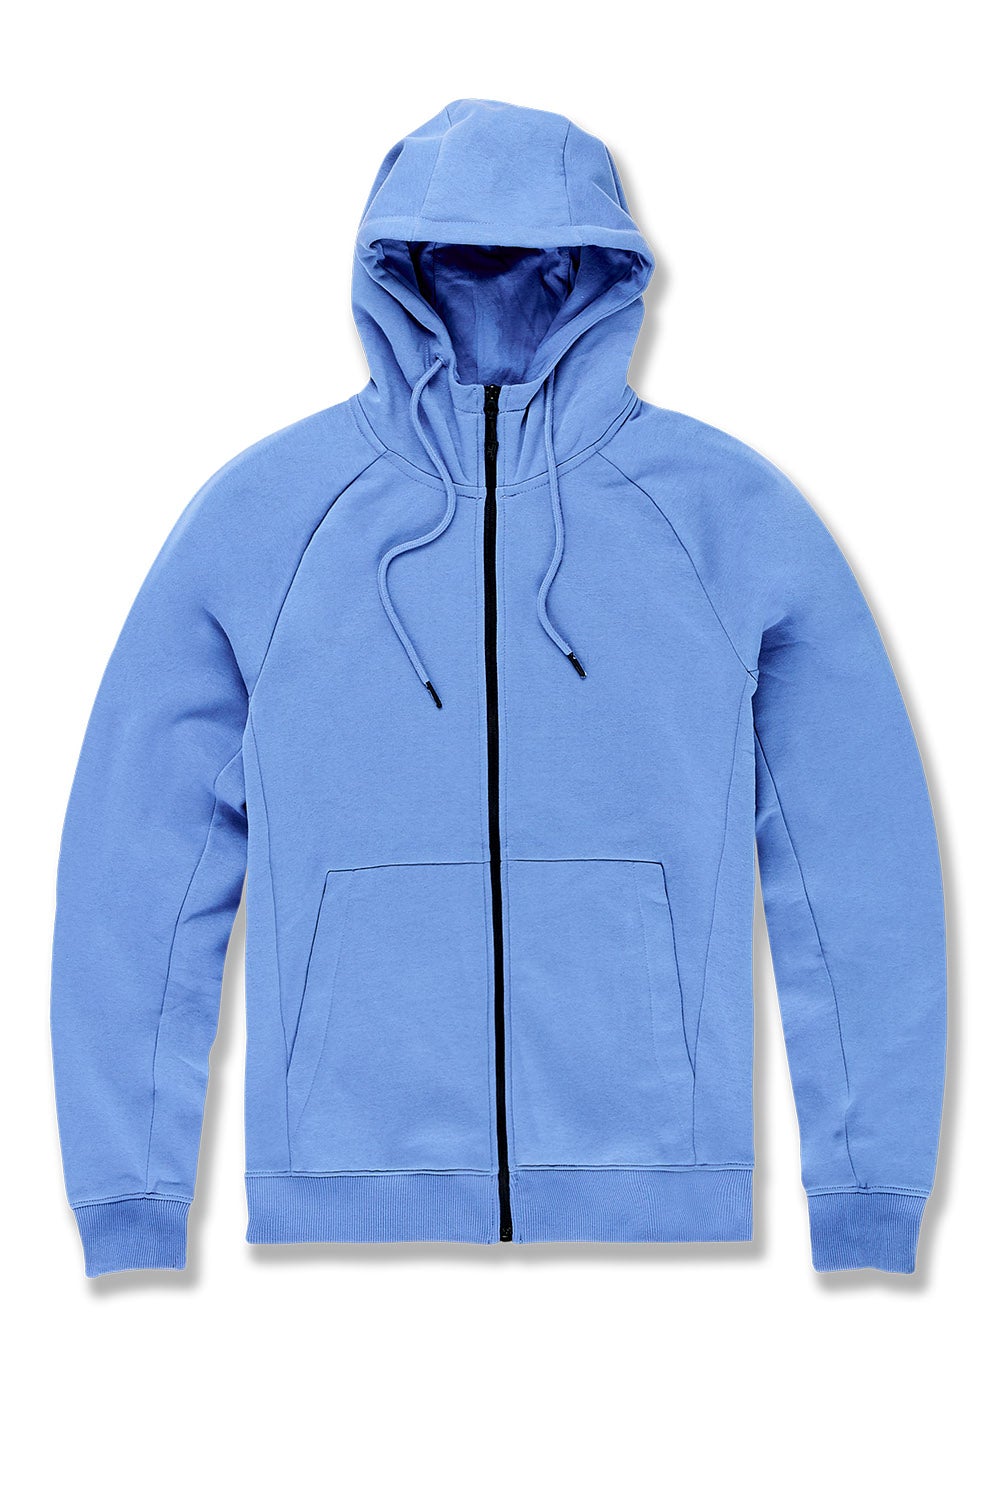 slate blue zip up hoodie